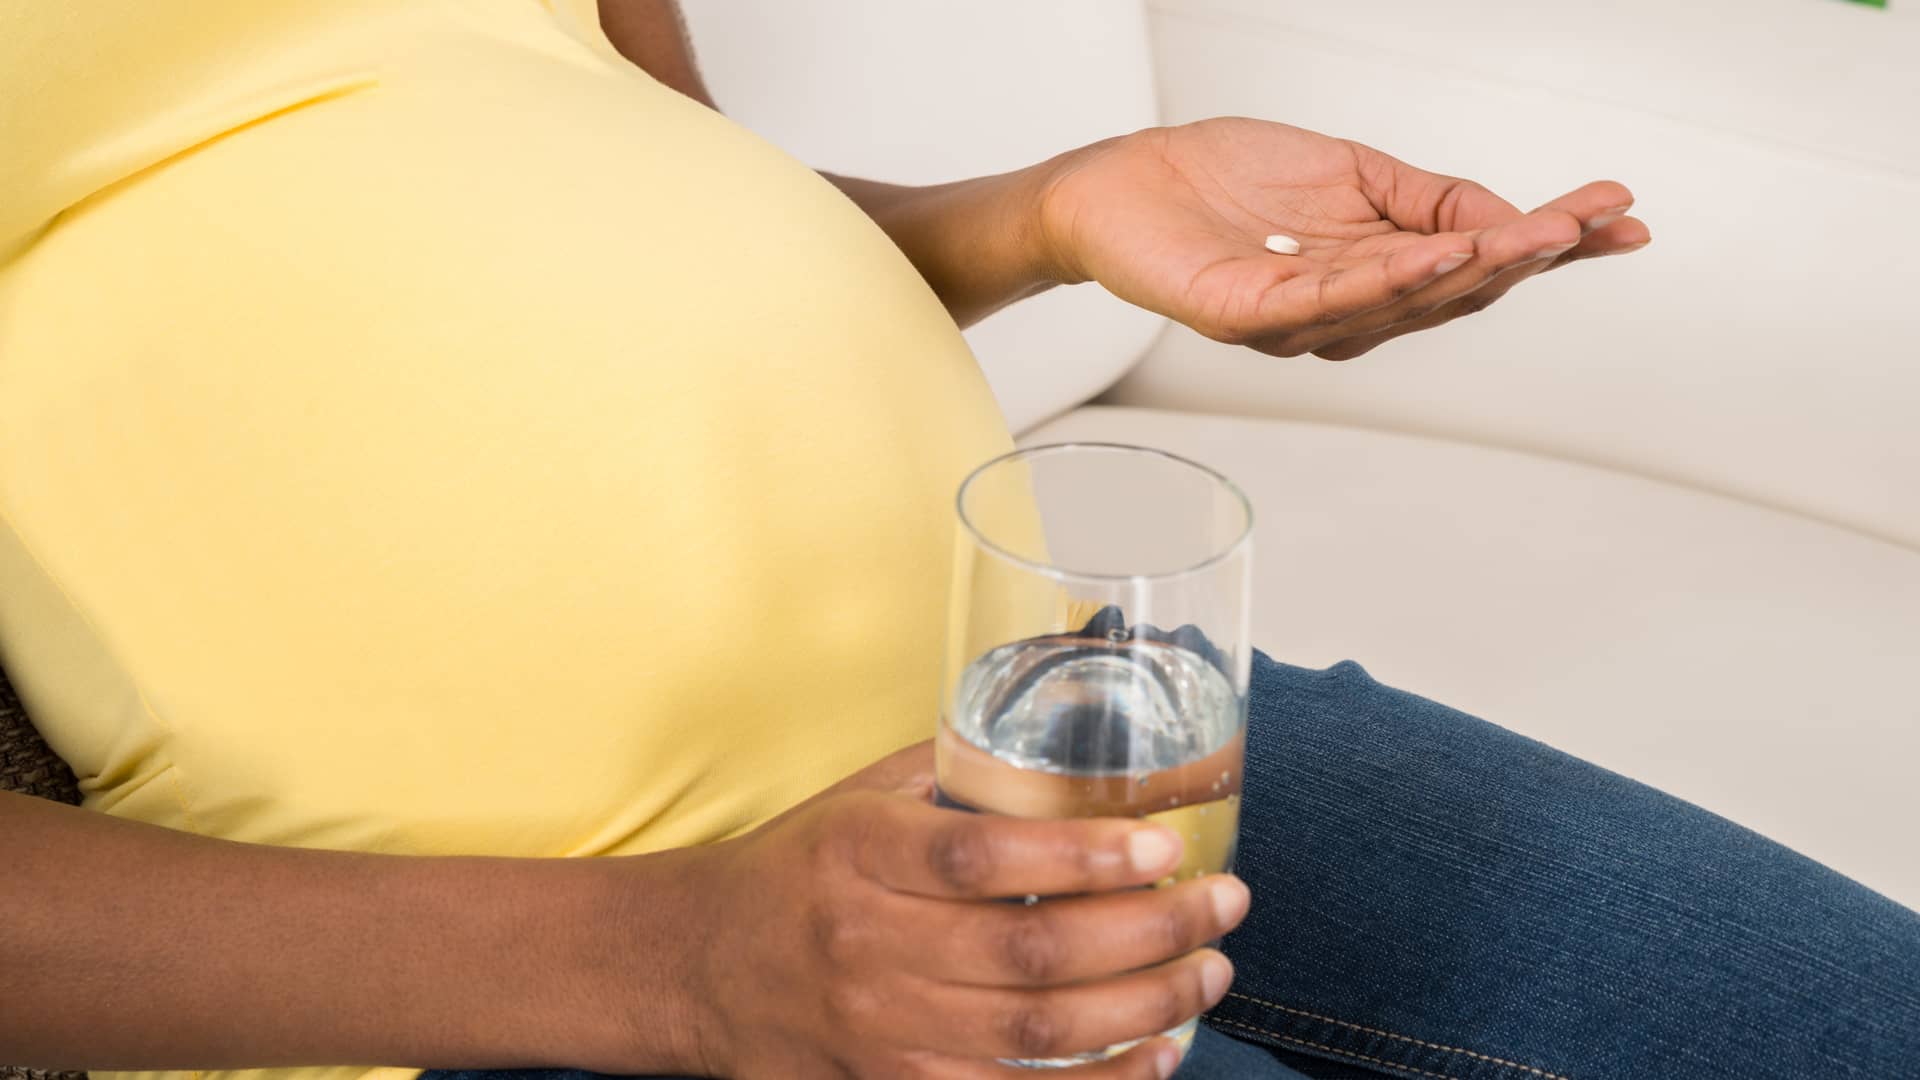 Manos de una embarazada a punto de tomarse un paracetamol para el dolor de cabeza que sufre